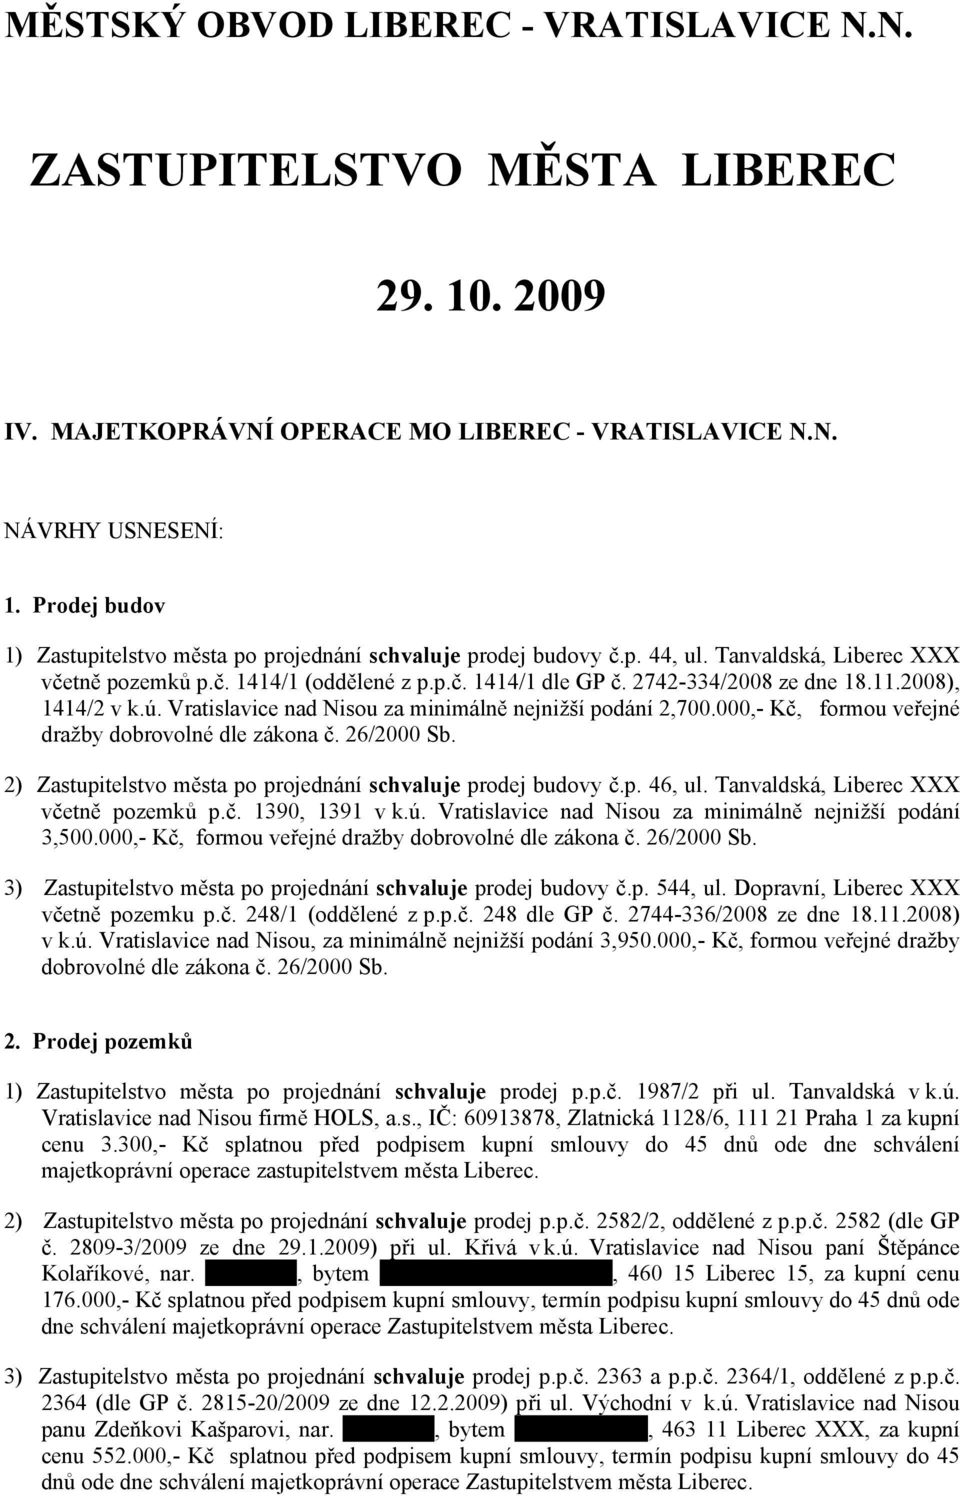 11.2008), 1414/2 v k.ú. Vratislavice nad Nisou za minimálně nejnižší podání 2,700.000,- Kč, formou veřejné dražby dobrovolné dle zákona č. 26/2000 Sb.